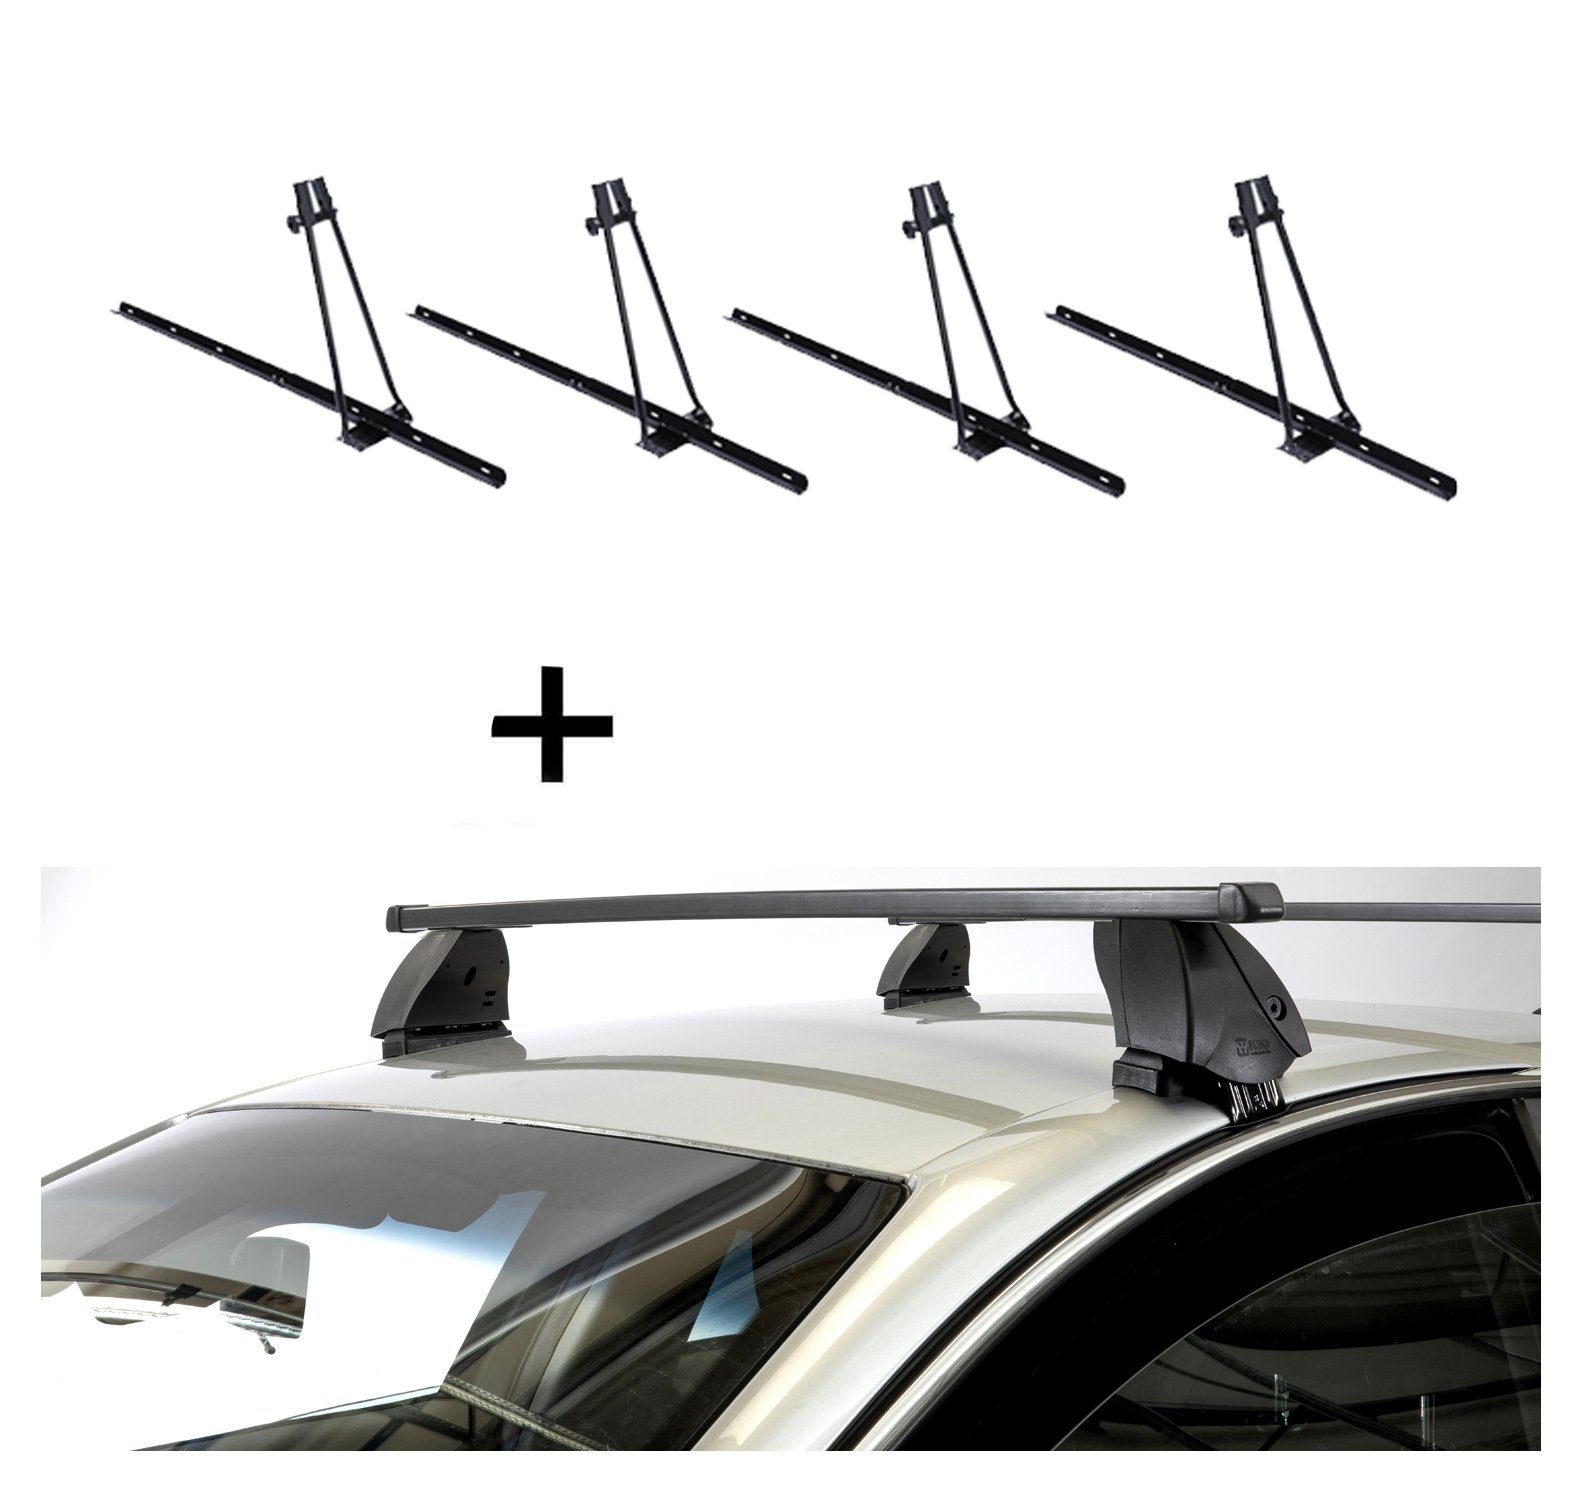 VDP Dachträger (Für Ihren Subaru Trezia (5Türer) ab 11, Fahrradträger und Dachträger im Set), 4x Fahrradträger ORION + Dachträger K1 MEDIUM kompatibel mit Subaru Trezia (5Türer) ab 11 | Dachgepäckträger